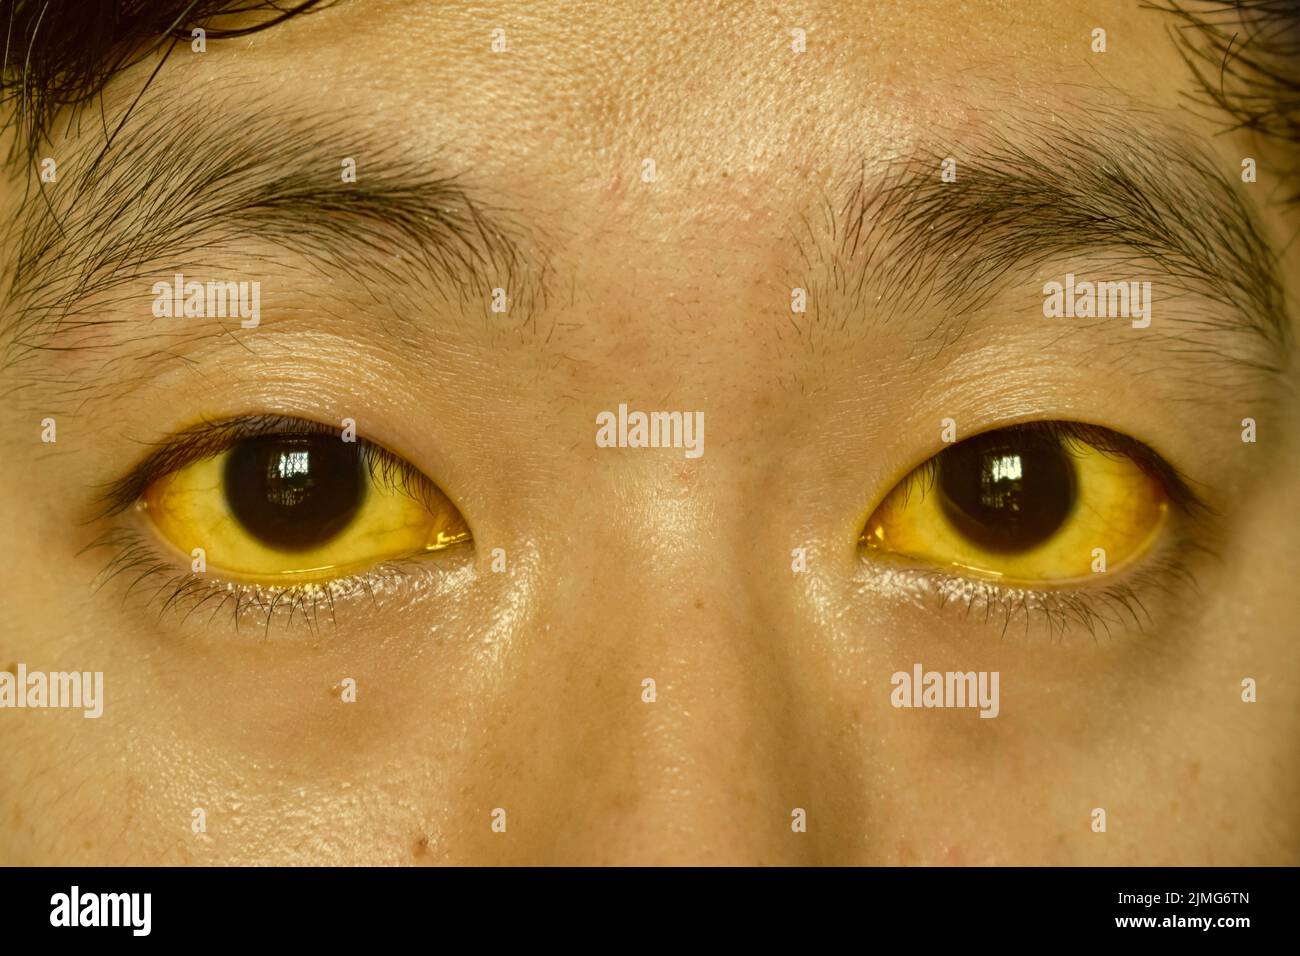 Jaunisse profonde chez le patient asiatique mâle. Décoloration jaunâtre de la peau et de la sclère. Hyperbilirubinémie. Hépatite aiguë. Banque D'Images